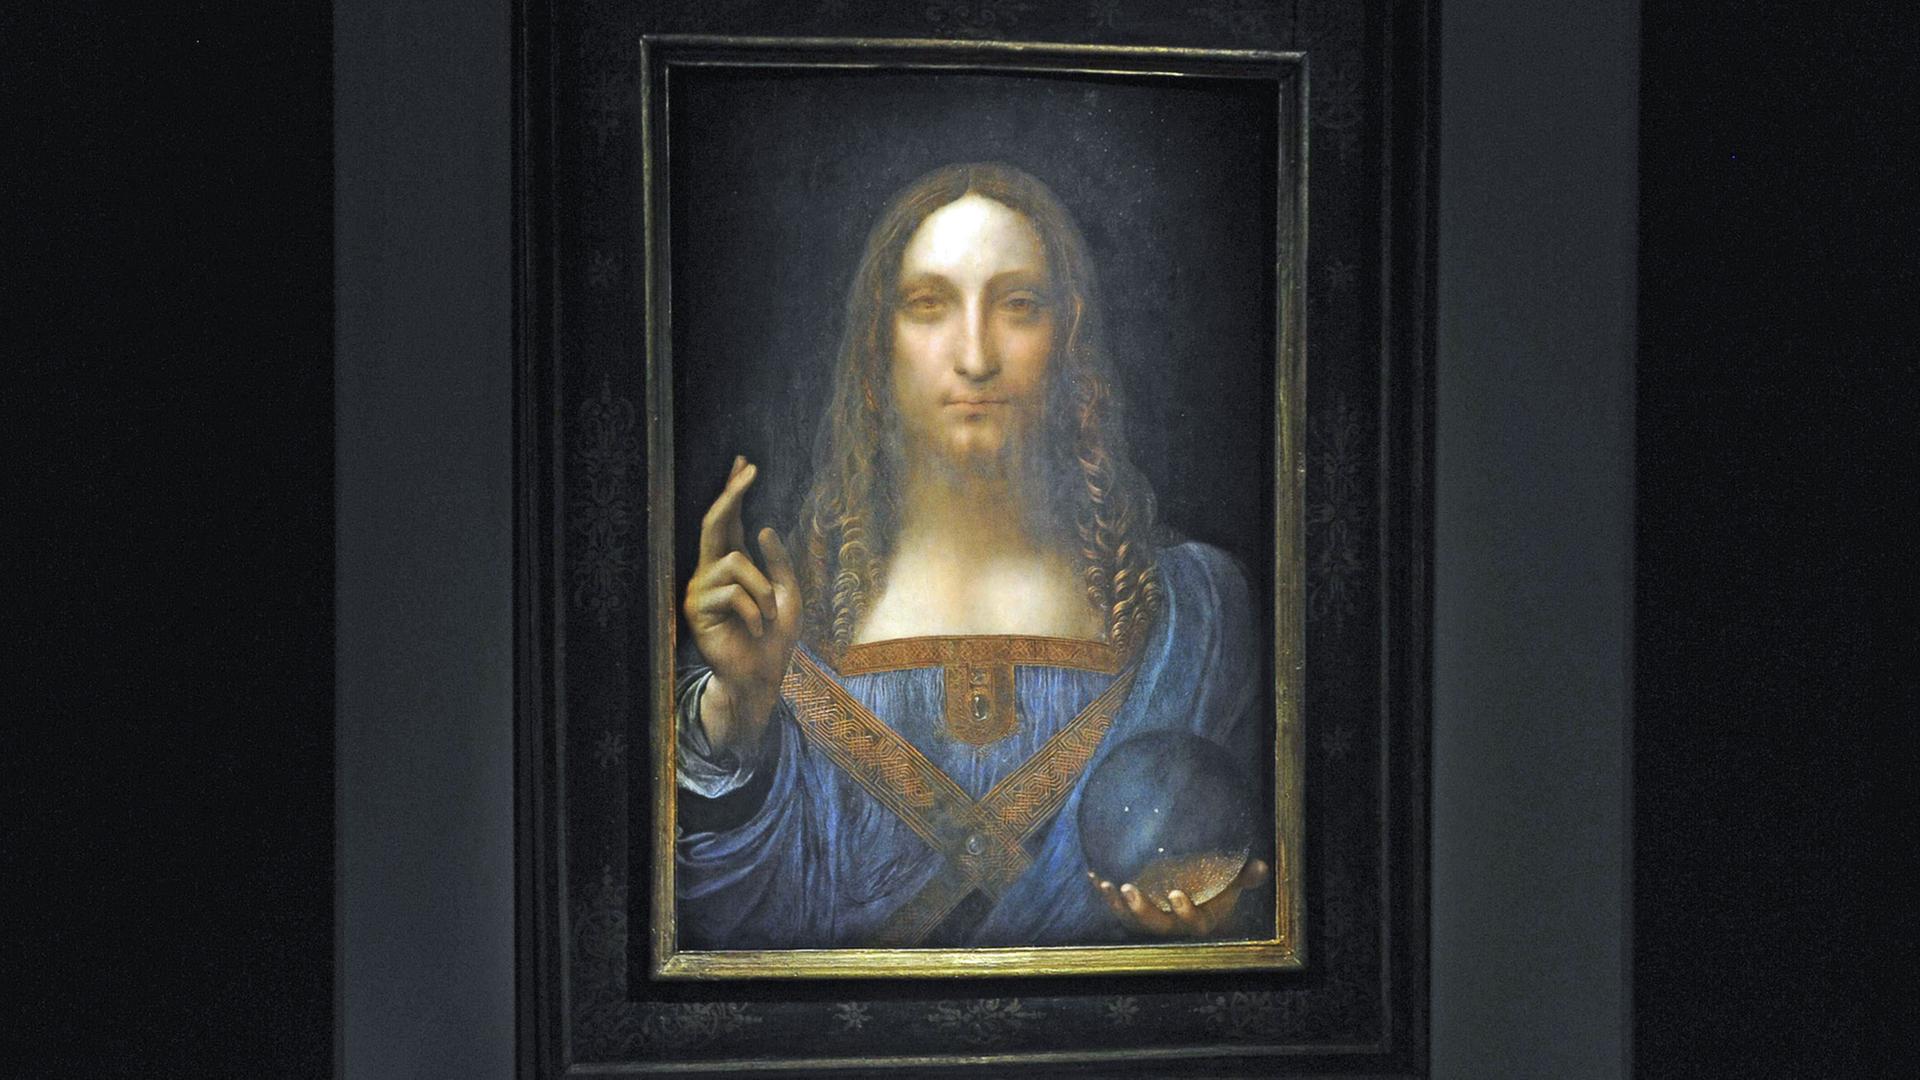 Ausschnitt aus dem Gemälde "Salvator Mundi", das von vielen Leonardo da Vinci zugeschrieben wird, was viele Experten allerdings bezweifeln.